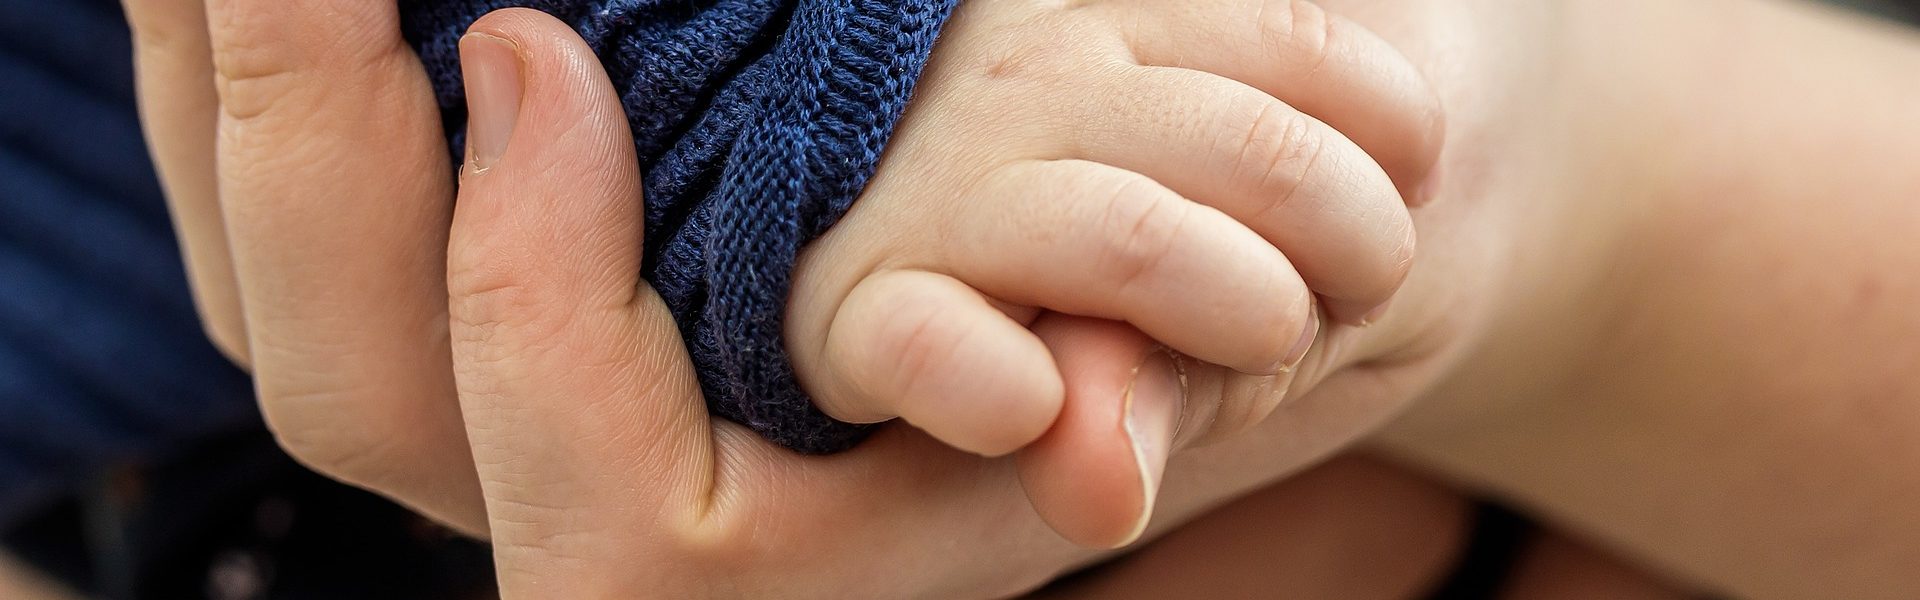 atopowe zapalenie skóry ręce dłonie dziecko